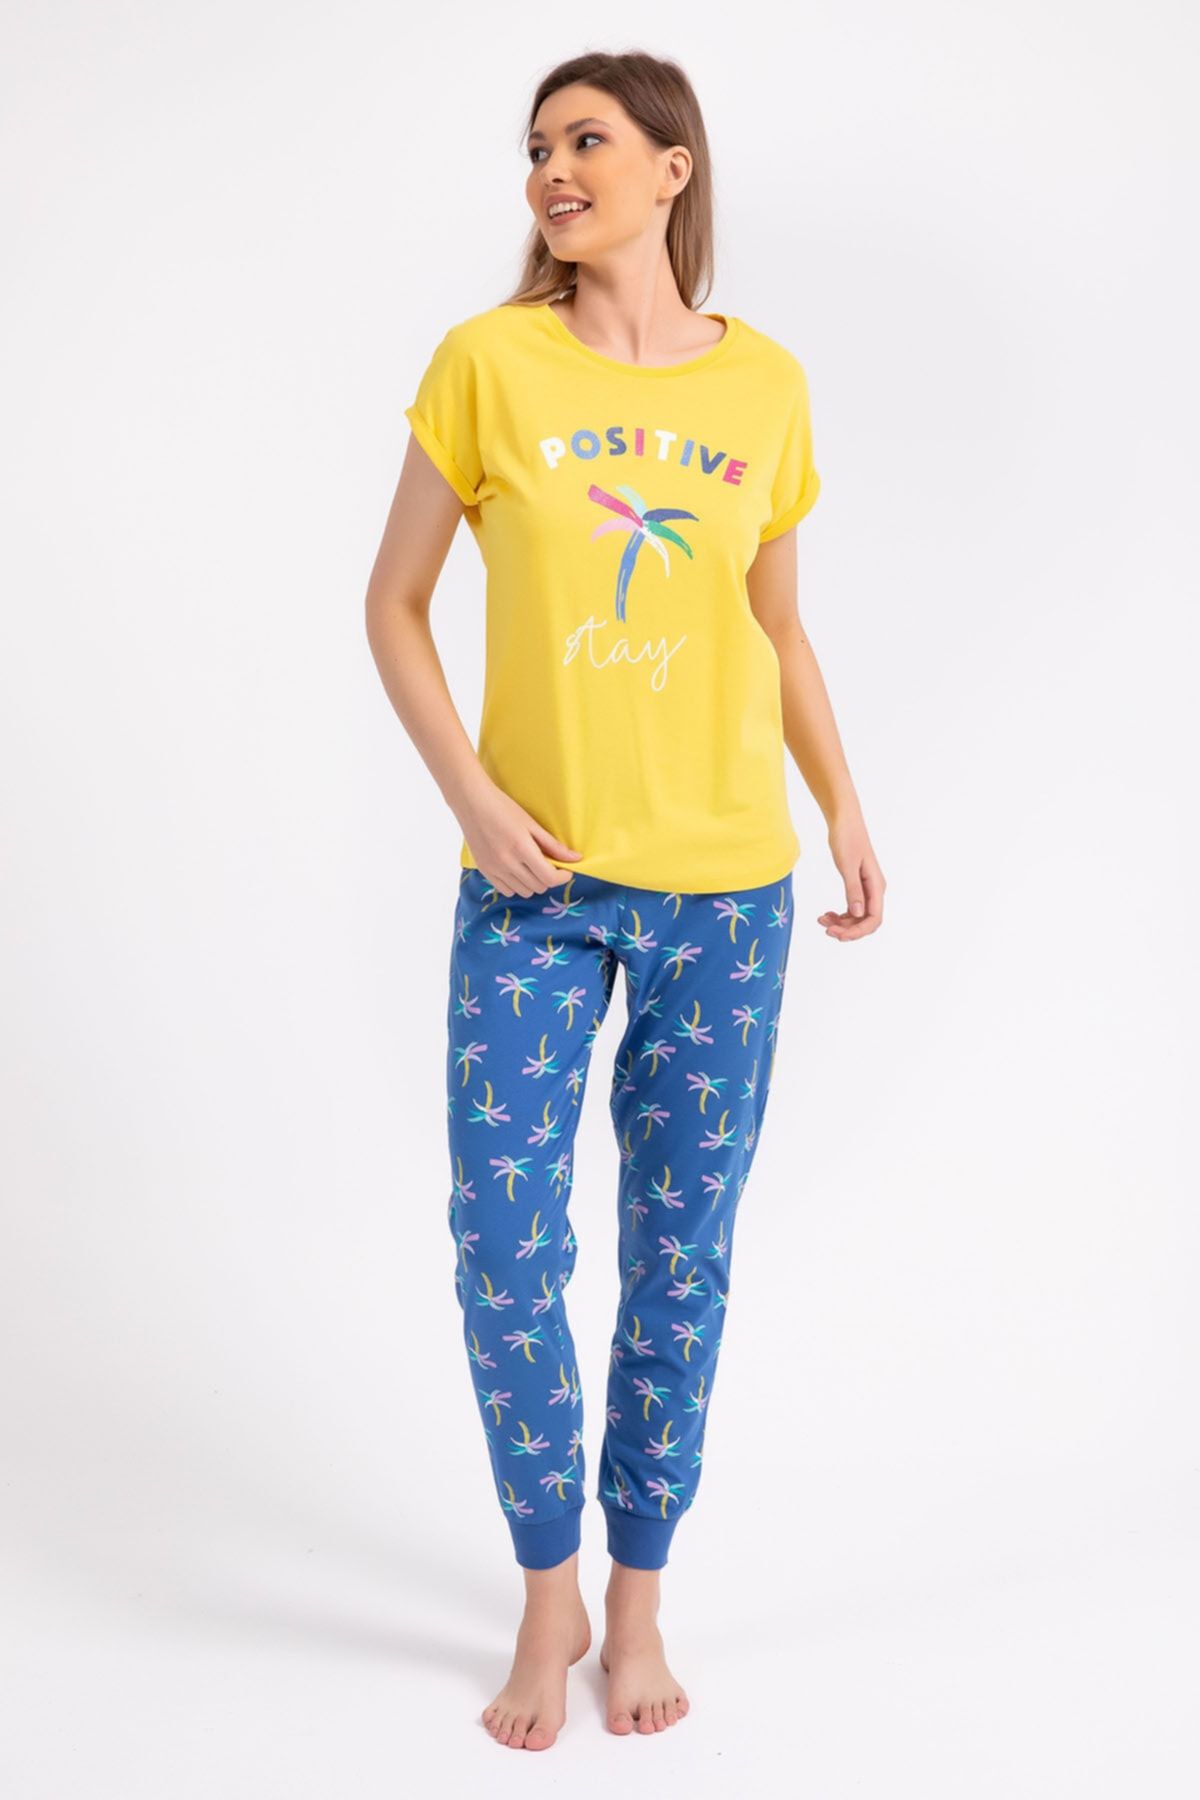 Rolypoly Rolypoly Positive Stay Sarı Kadın Pijama Takımı